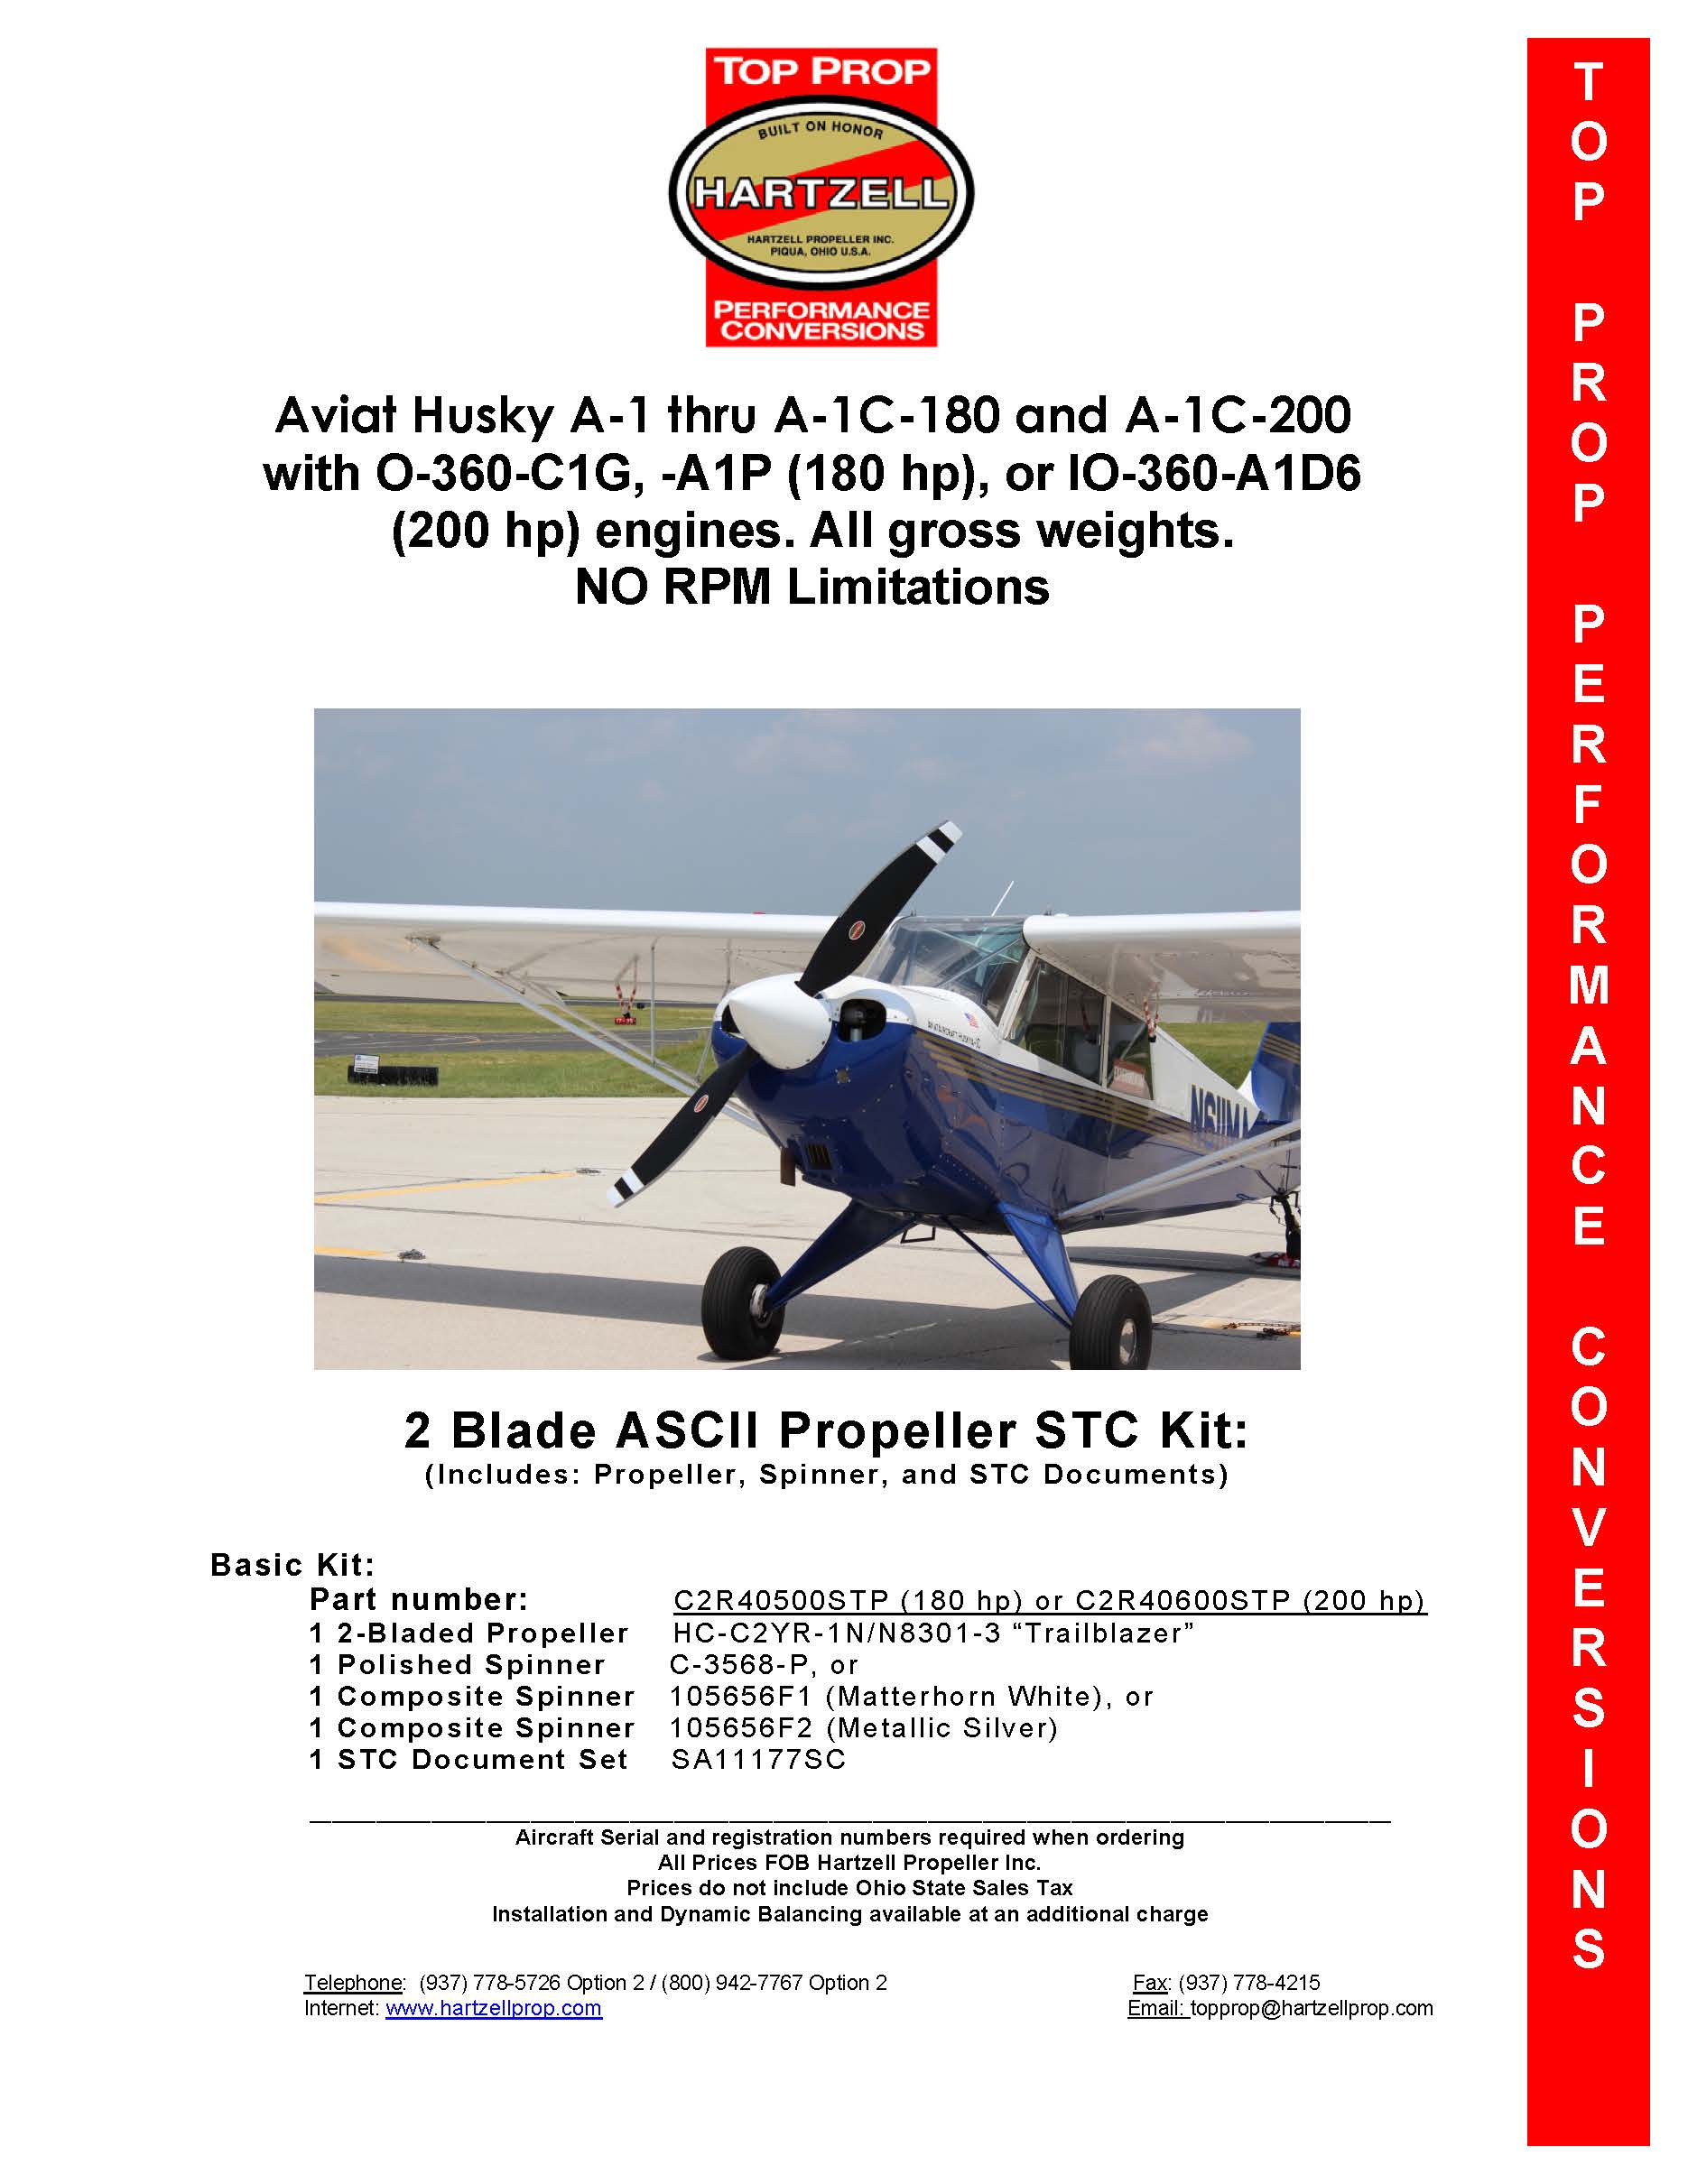 Aviat-Husky-A-1-C2R40600STP-PAGE-1